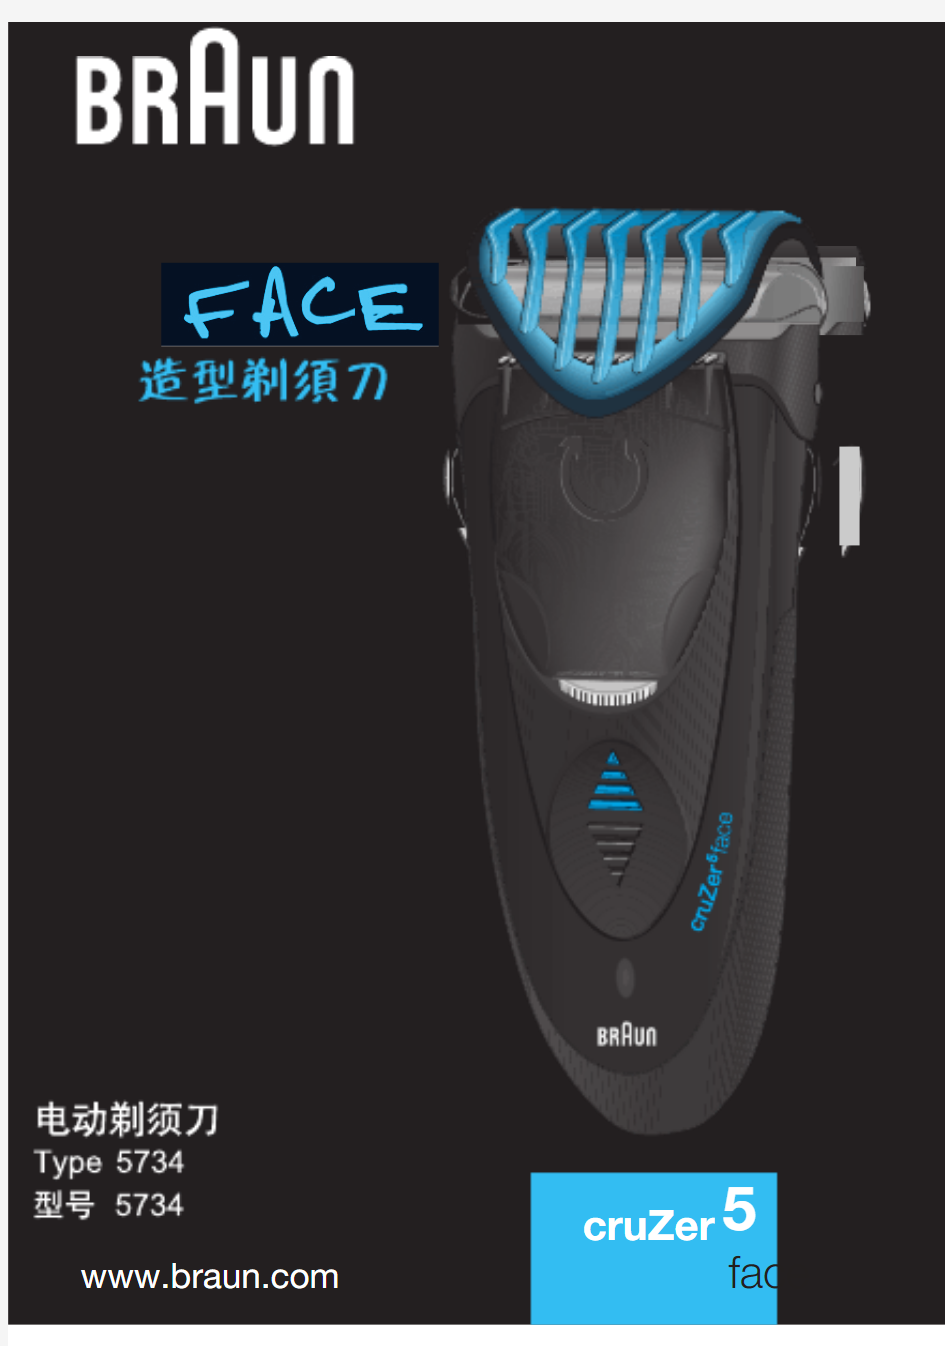 博朗CruZer5,face剃须刀中文版说明书